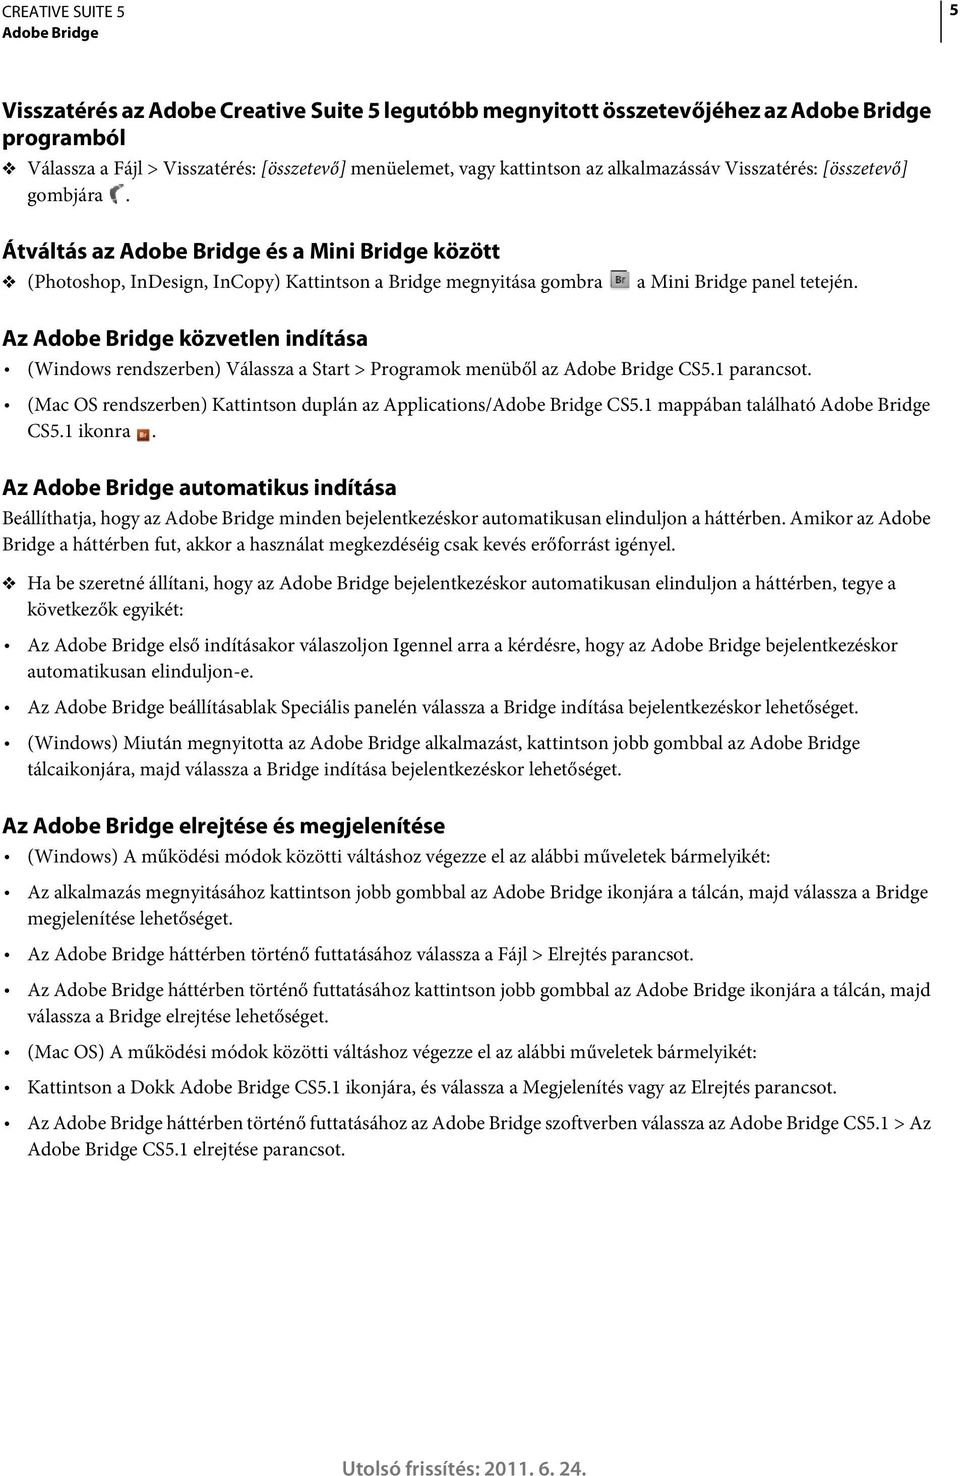 Az Adobe Bridge közvetlen indítása (Windows rendszerben) Válassza a Start > Programok menüből az Adobe Bridge CS5.1 parancsot. (Mac OS rendszerben) Kattintson duplán az Applications/Adobe Bridge CS5.